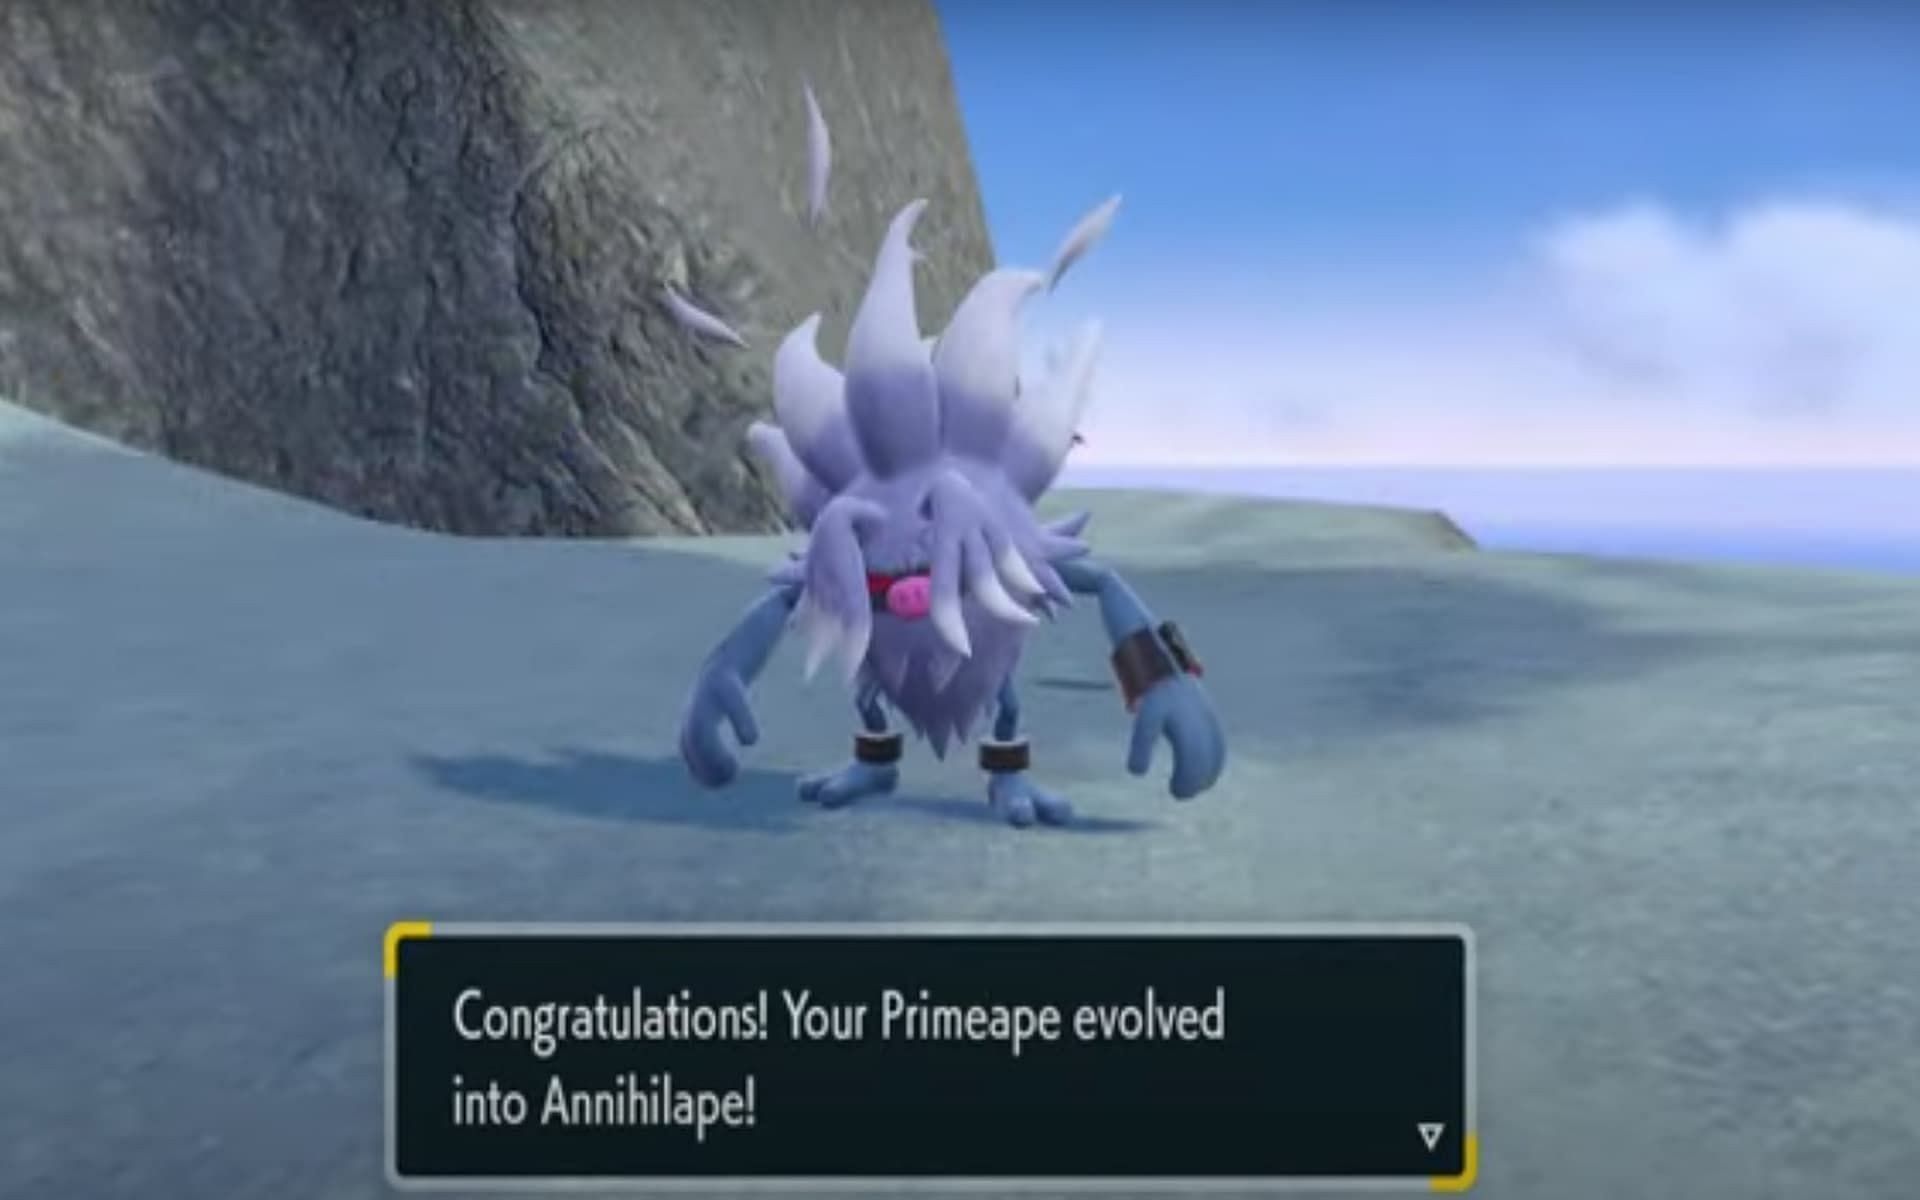 Primeape can evolve into a new evolution: Annihilape (Image via YouTube/RaZzi)